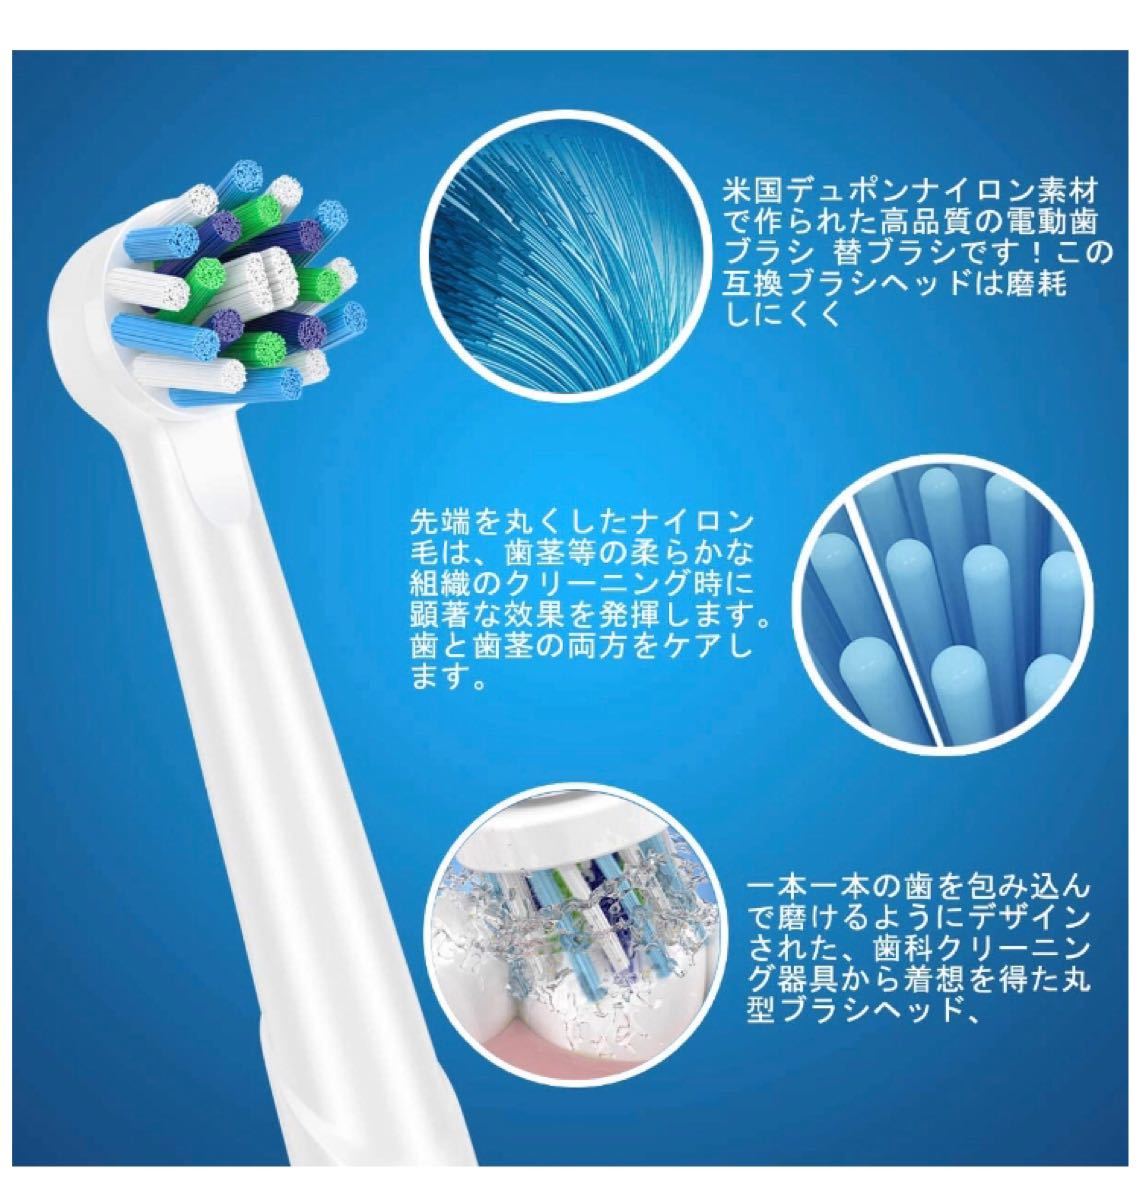 歯ブラシヘッドはOral b電動歯ブラシと互換性があり16個の電動歯ブラシ交換用